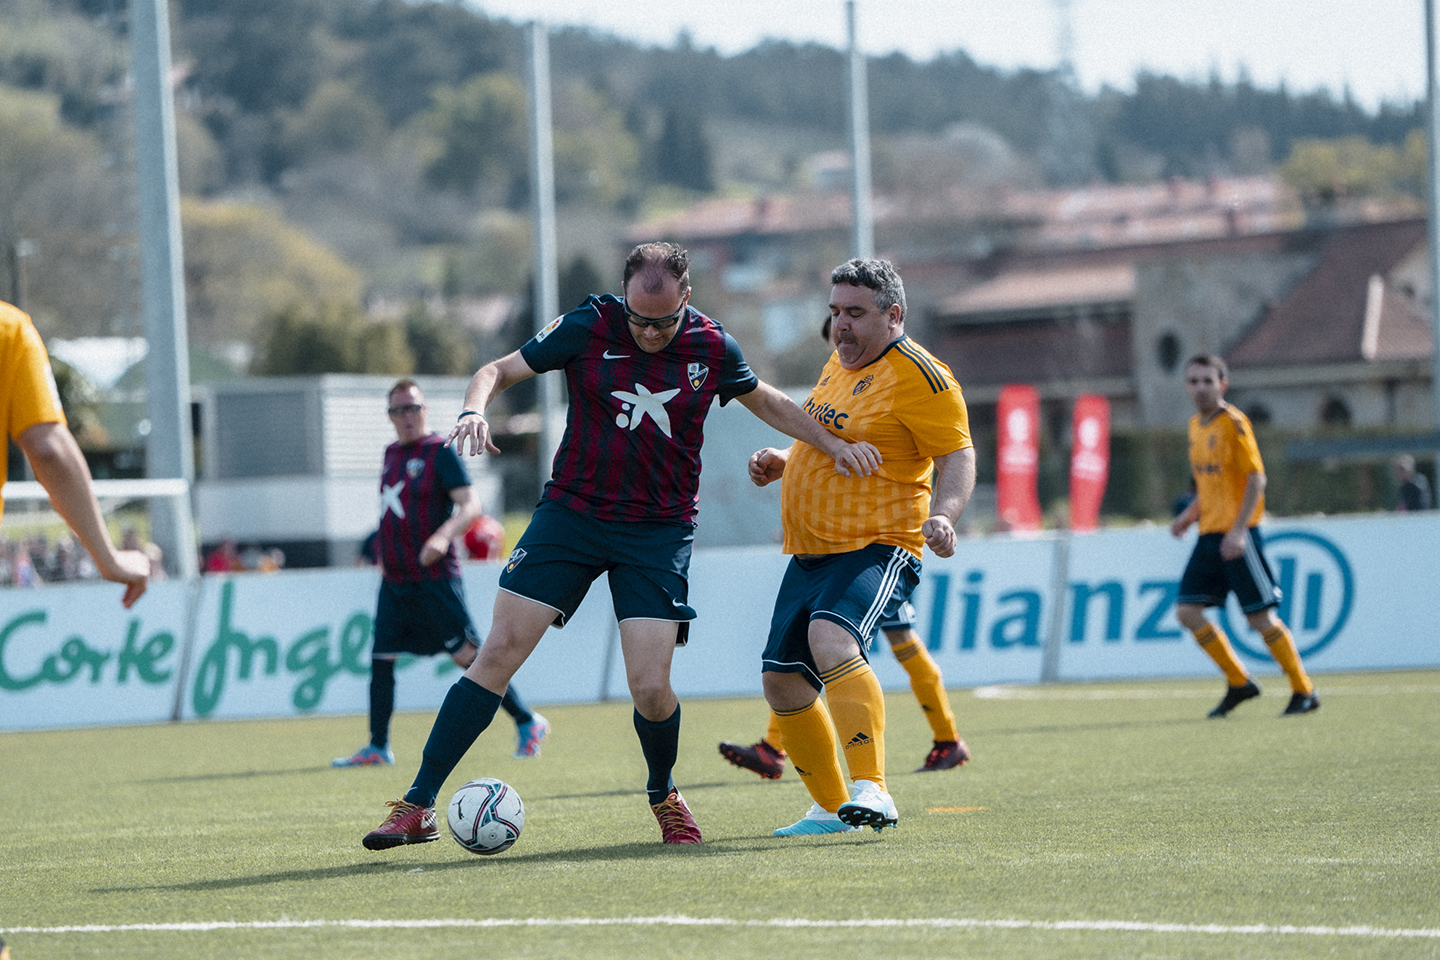 Un jugador de la SD Huesca Genuine protegeix la pilota enfront d'un altre de la SD Ponferradina Genuine en un dels partits disputats a la Ciutat Esportiva de Lezama en LaLiga Genuine Santander.